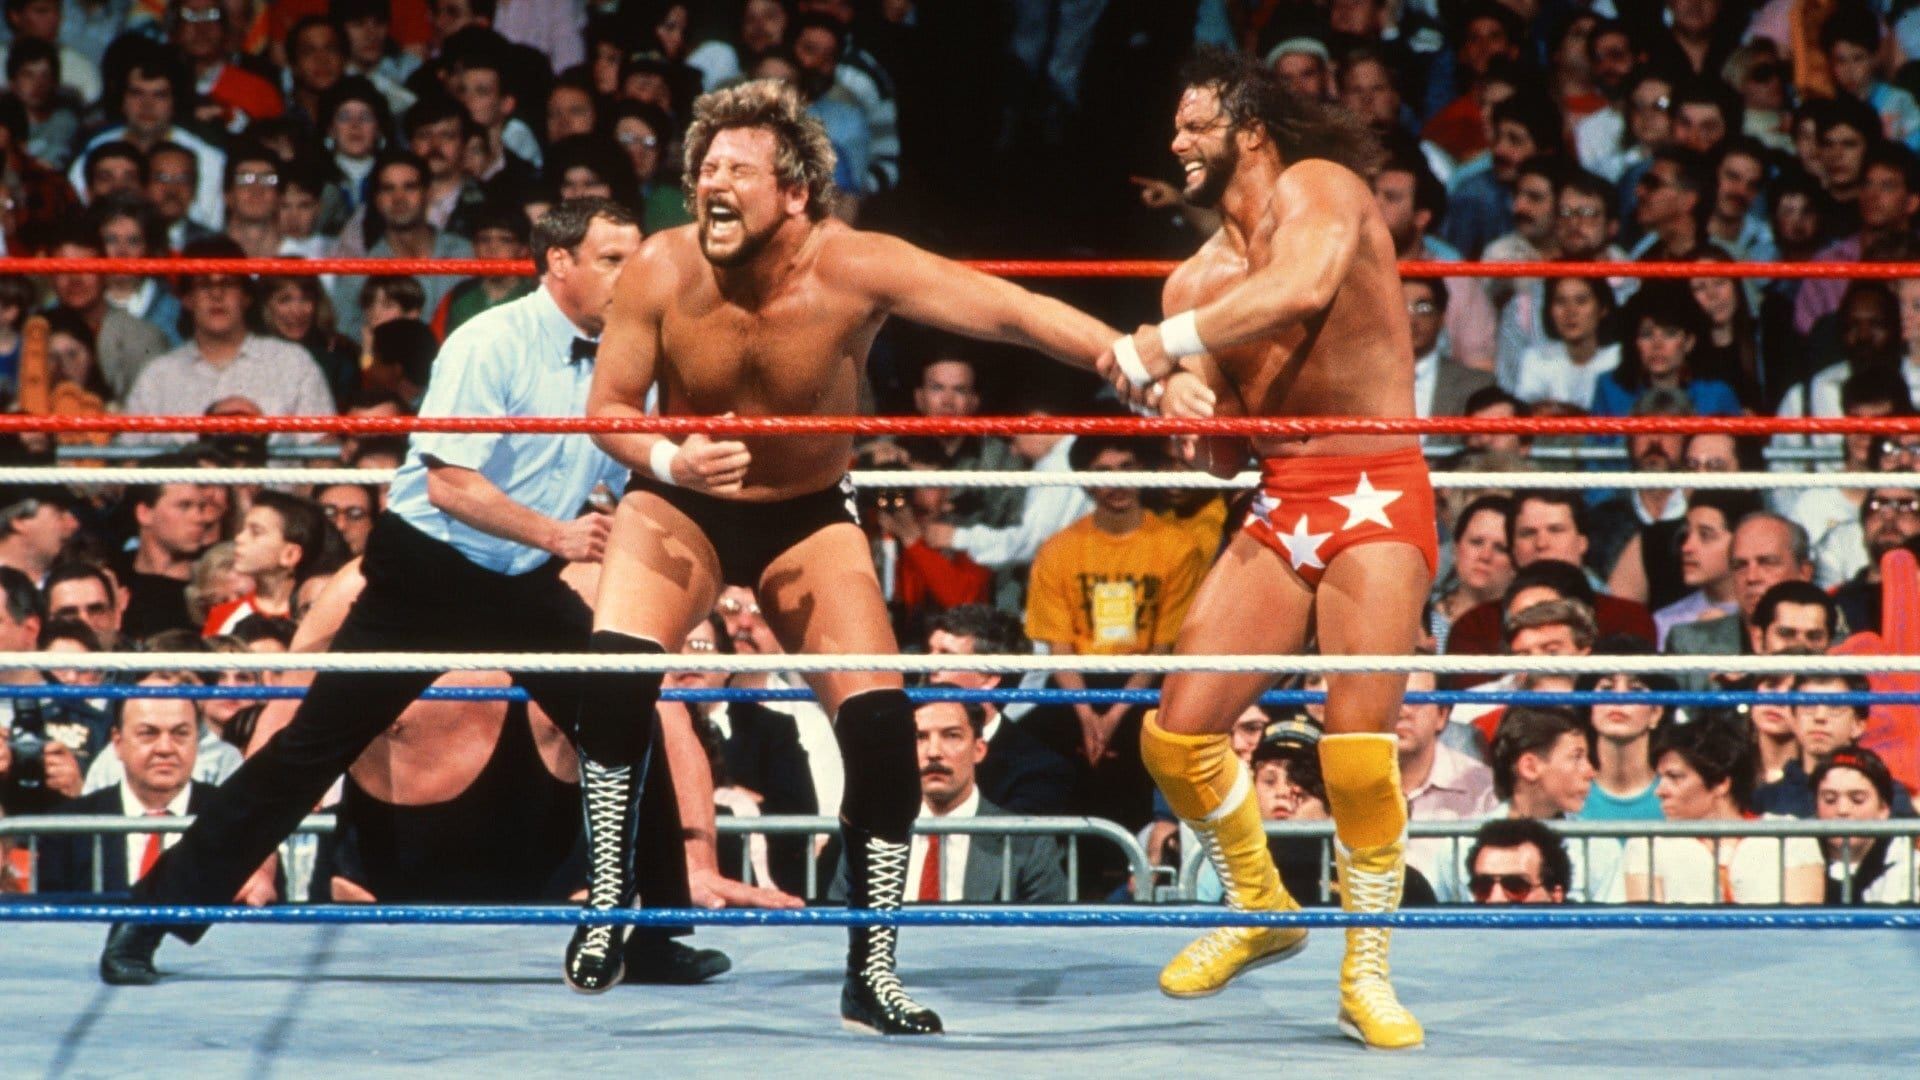 WrestleMania IV background